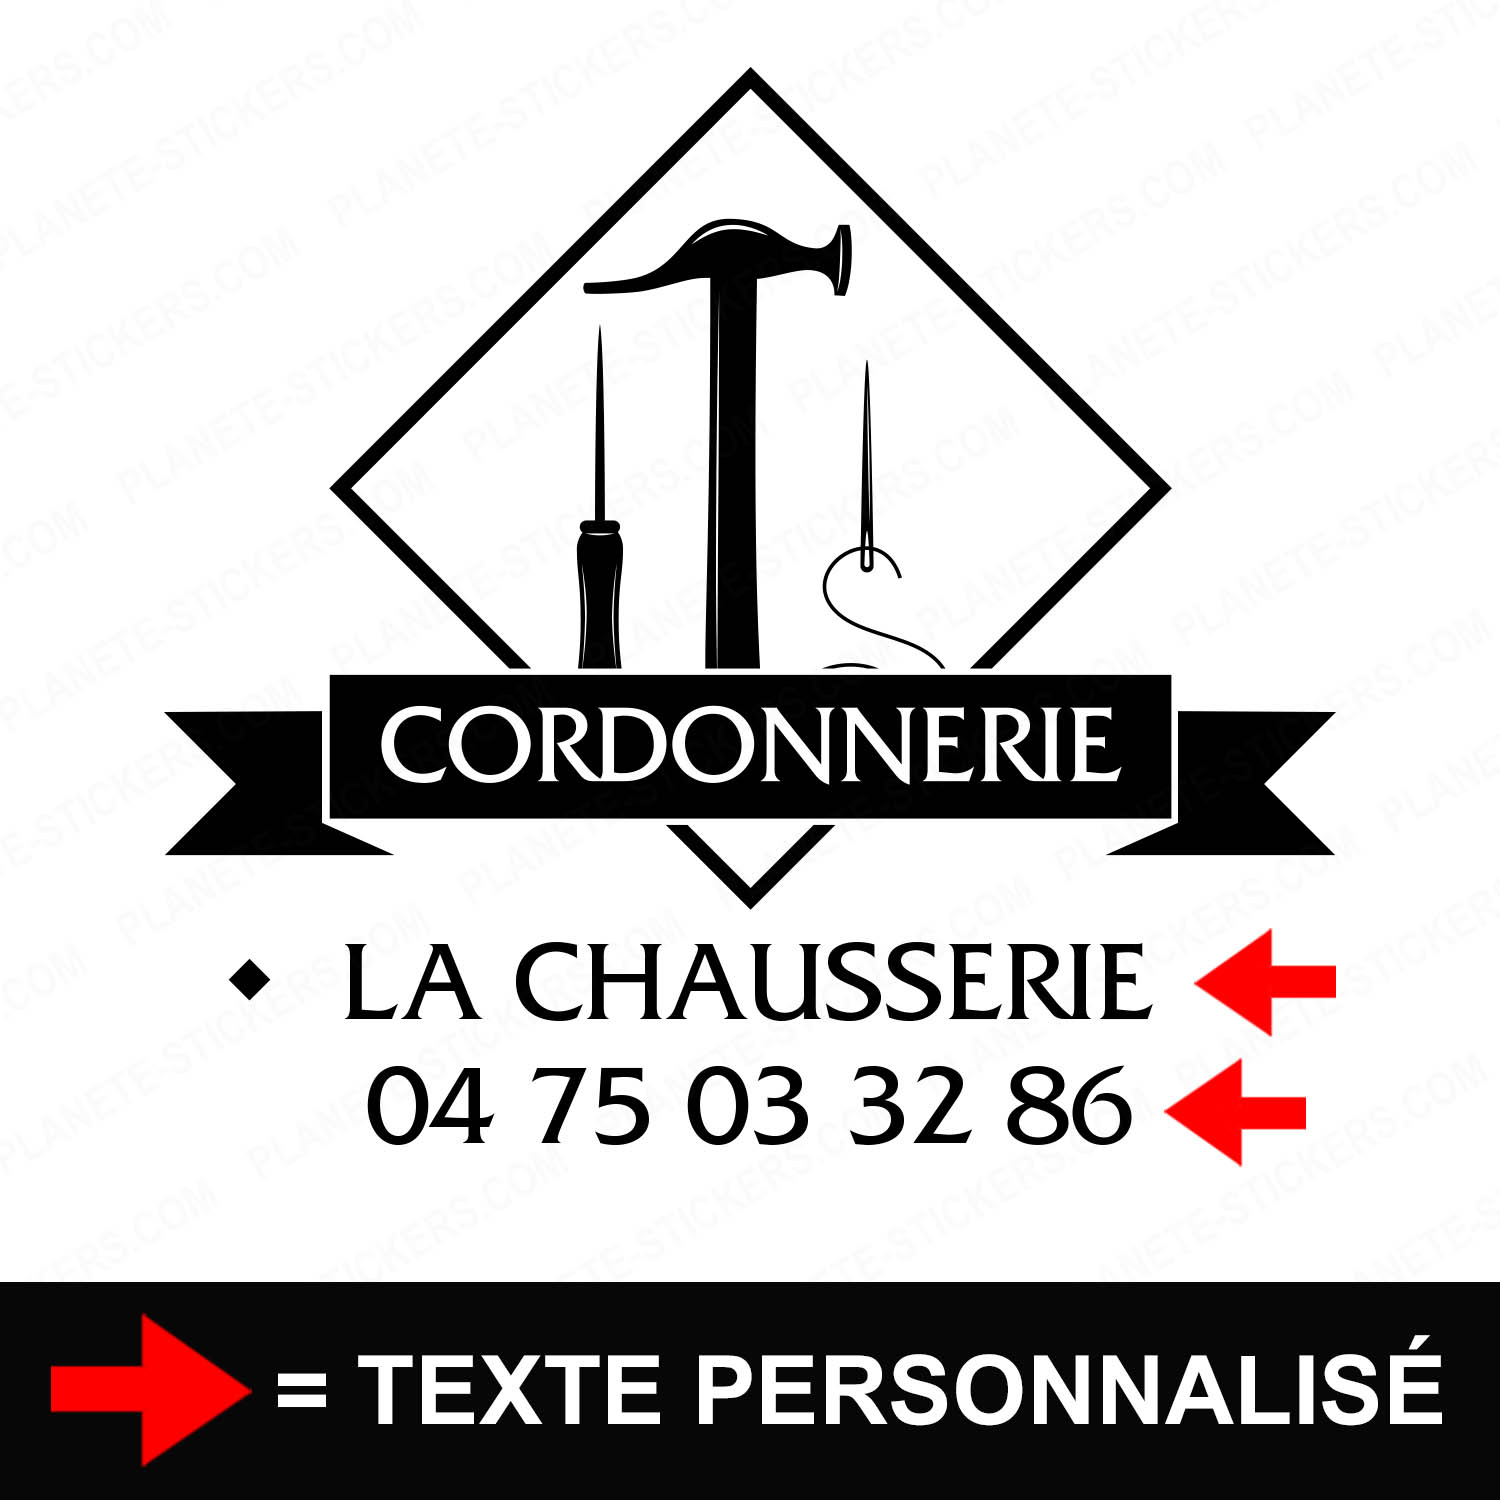 ref4cordonniervitrine-stickers-cordonnerie-vitrine-sticker-personnalisé-autocollant-atelier-chaussure-marteau-reparation-pro-professionnel-2